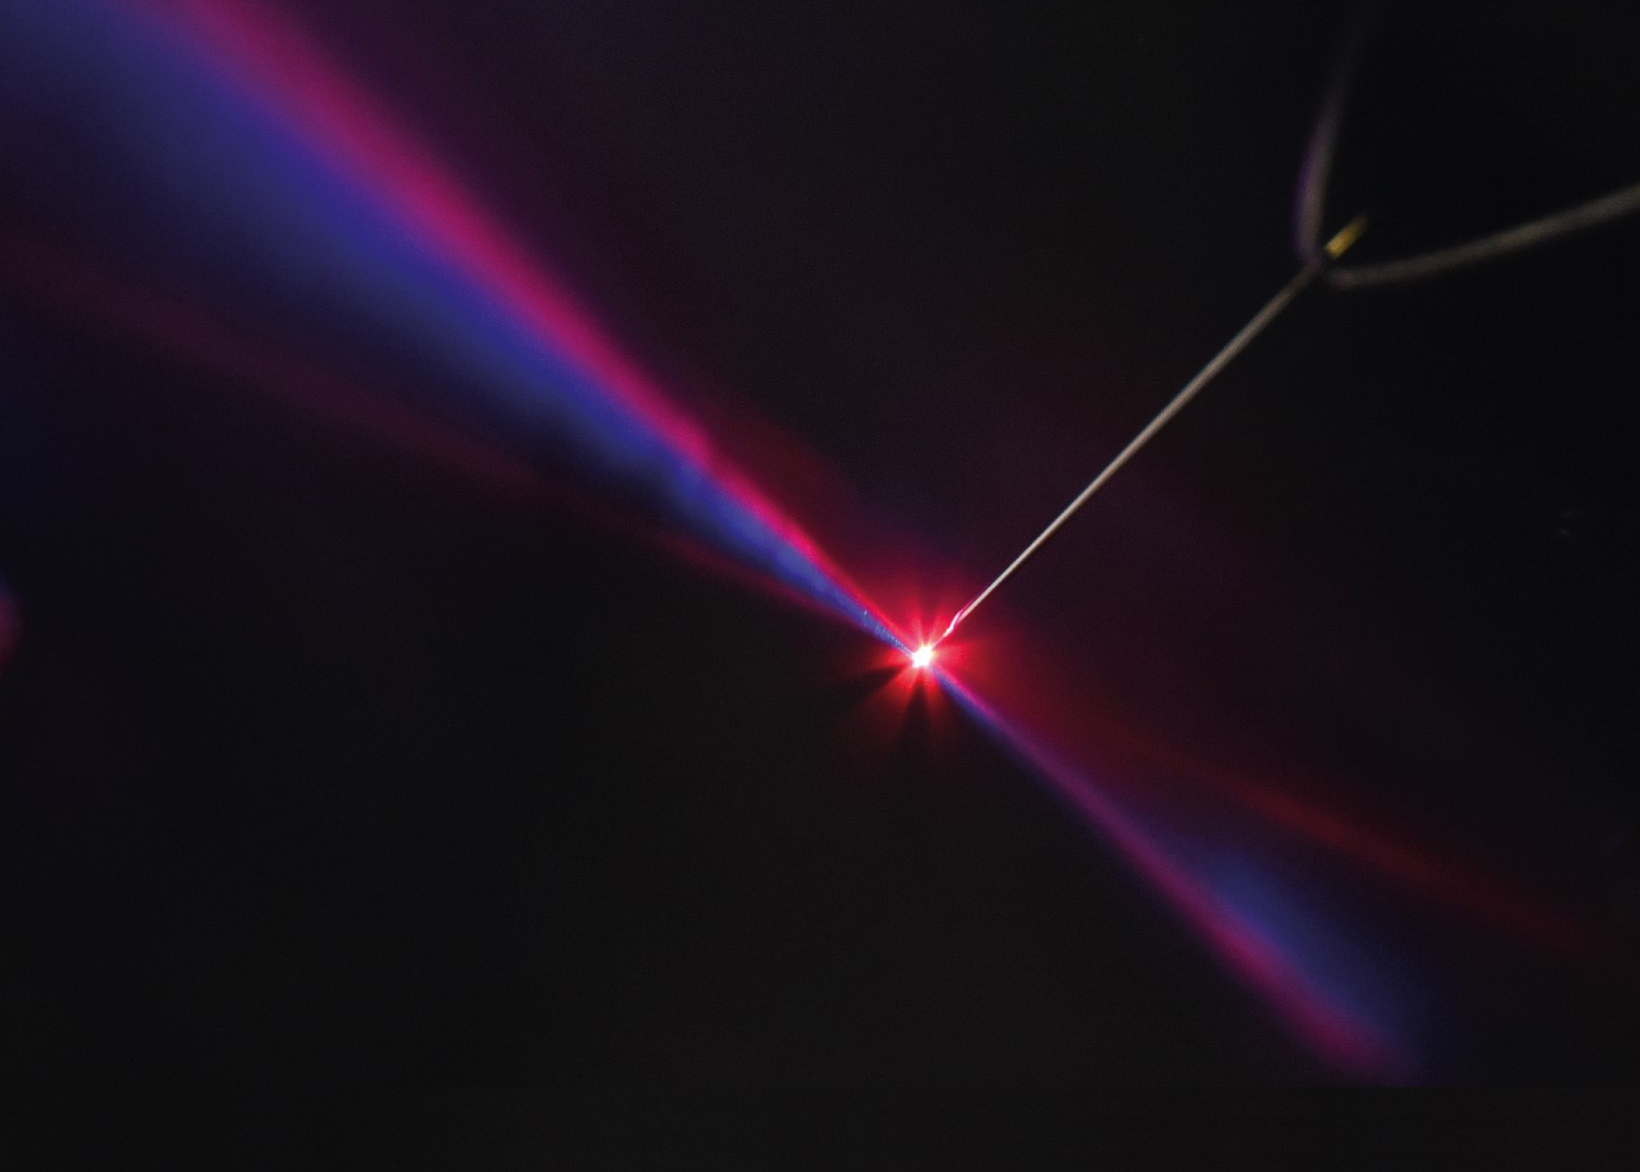 Ein starker Laserpuls (im Foto rot) wird mit einem Puls der doppelten Lichtfrequenz (blau) überlagert. Beide Pulse werden über einen Parabolspiegel (links) auf eine Metall-Nadelspitze fokussiert. Die emittierten Elektronen (nicht sichtbar) werden entsprechend ihrer Energie detektiert. Eine Wiederholung dieser Messung mit unterschiedlichem, zeitlichem Versatz der Felder erlaubt es, auf das Emissionszeitfenster zurückzuschließen. (Bild: FAU/Tobias Boolakee, Philip Dienstbier)